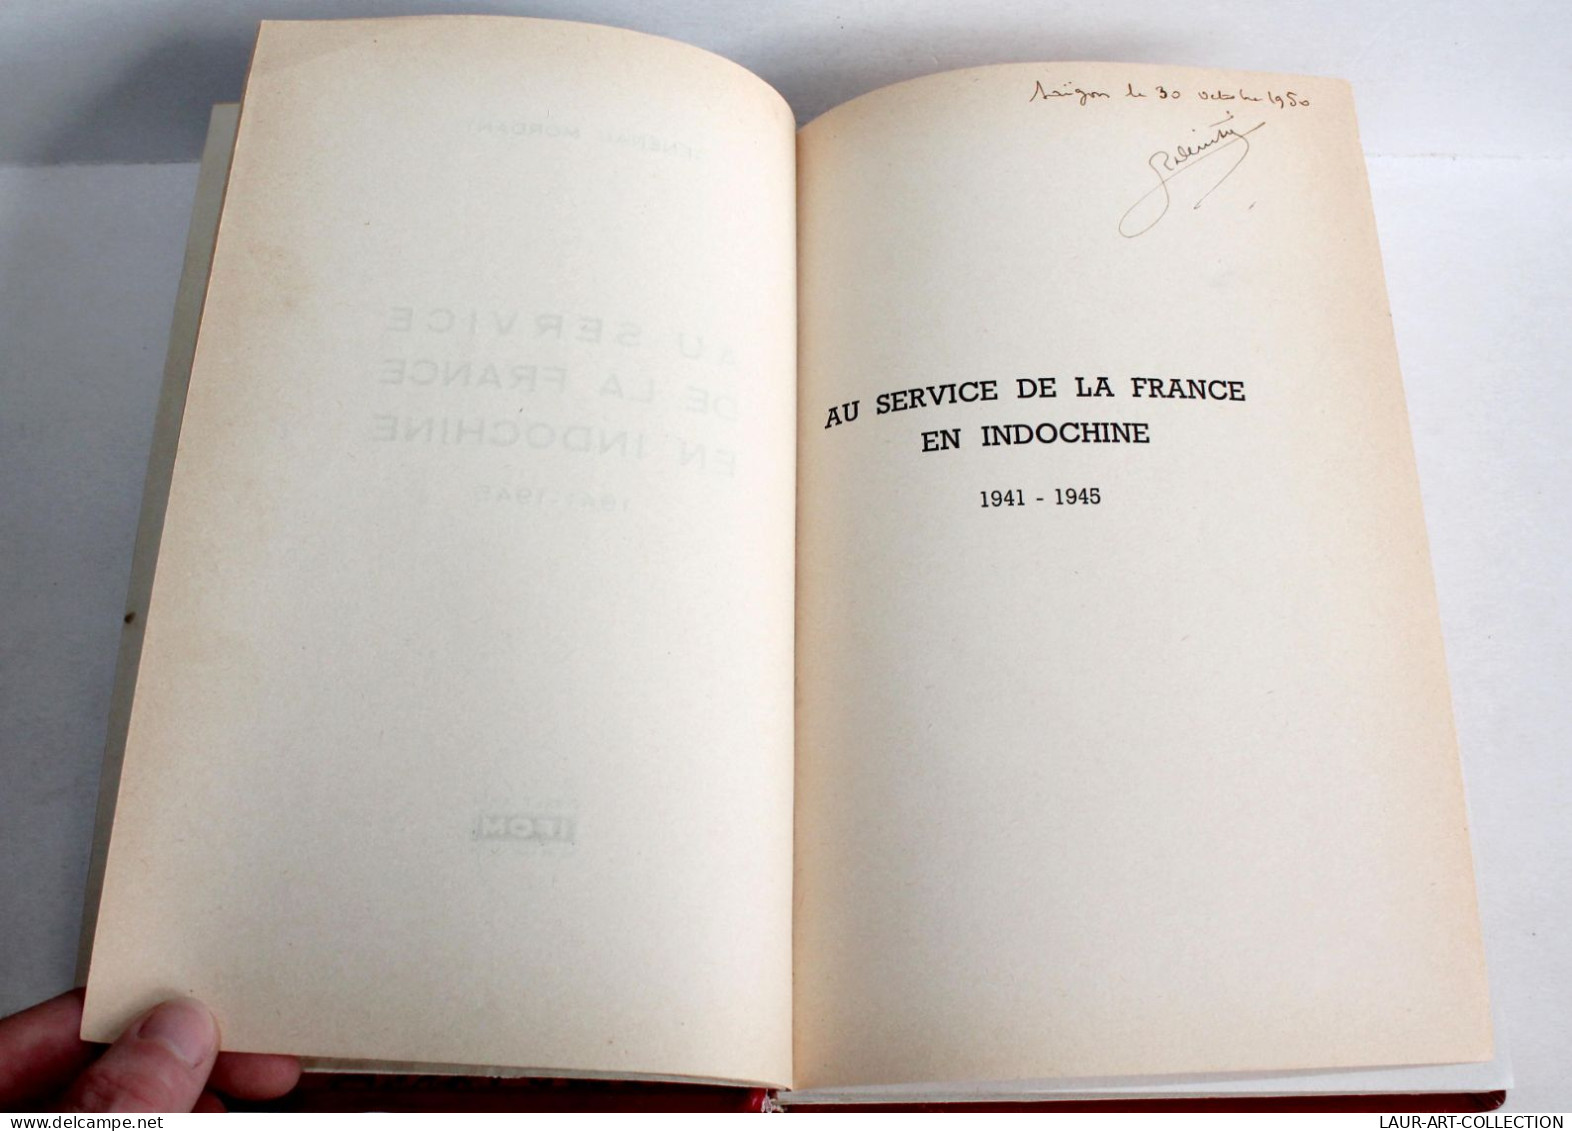 AU SERVICE DE LA FRANCE EN INDOCHINE 1941-1945 Par GENERAL MORDANT 1950 SAIGON / ANCIEN LIVRE XXe SIECLE (2603.109) - Storia